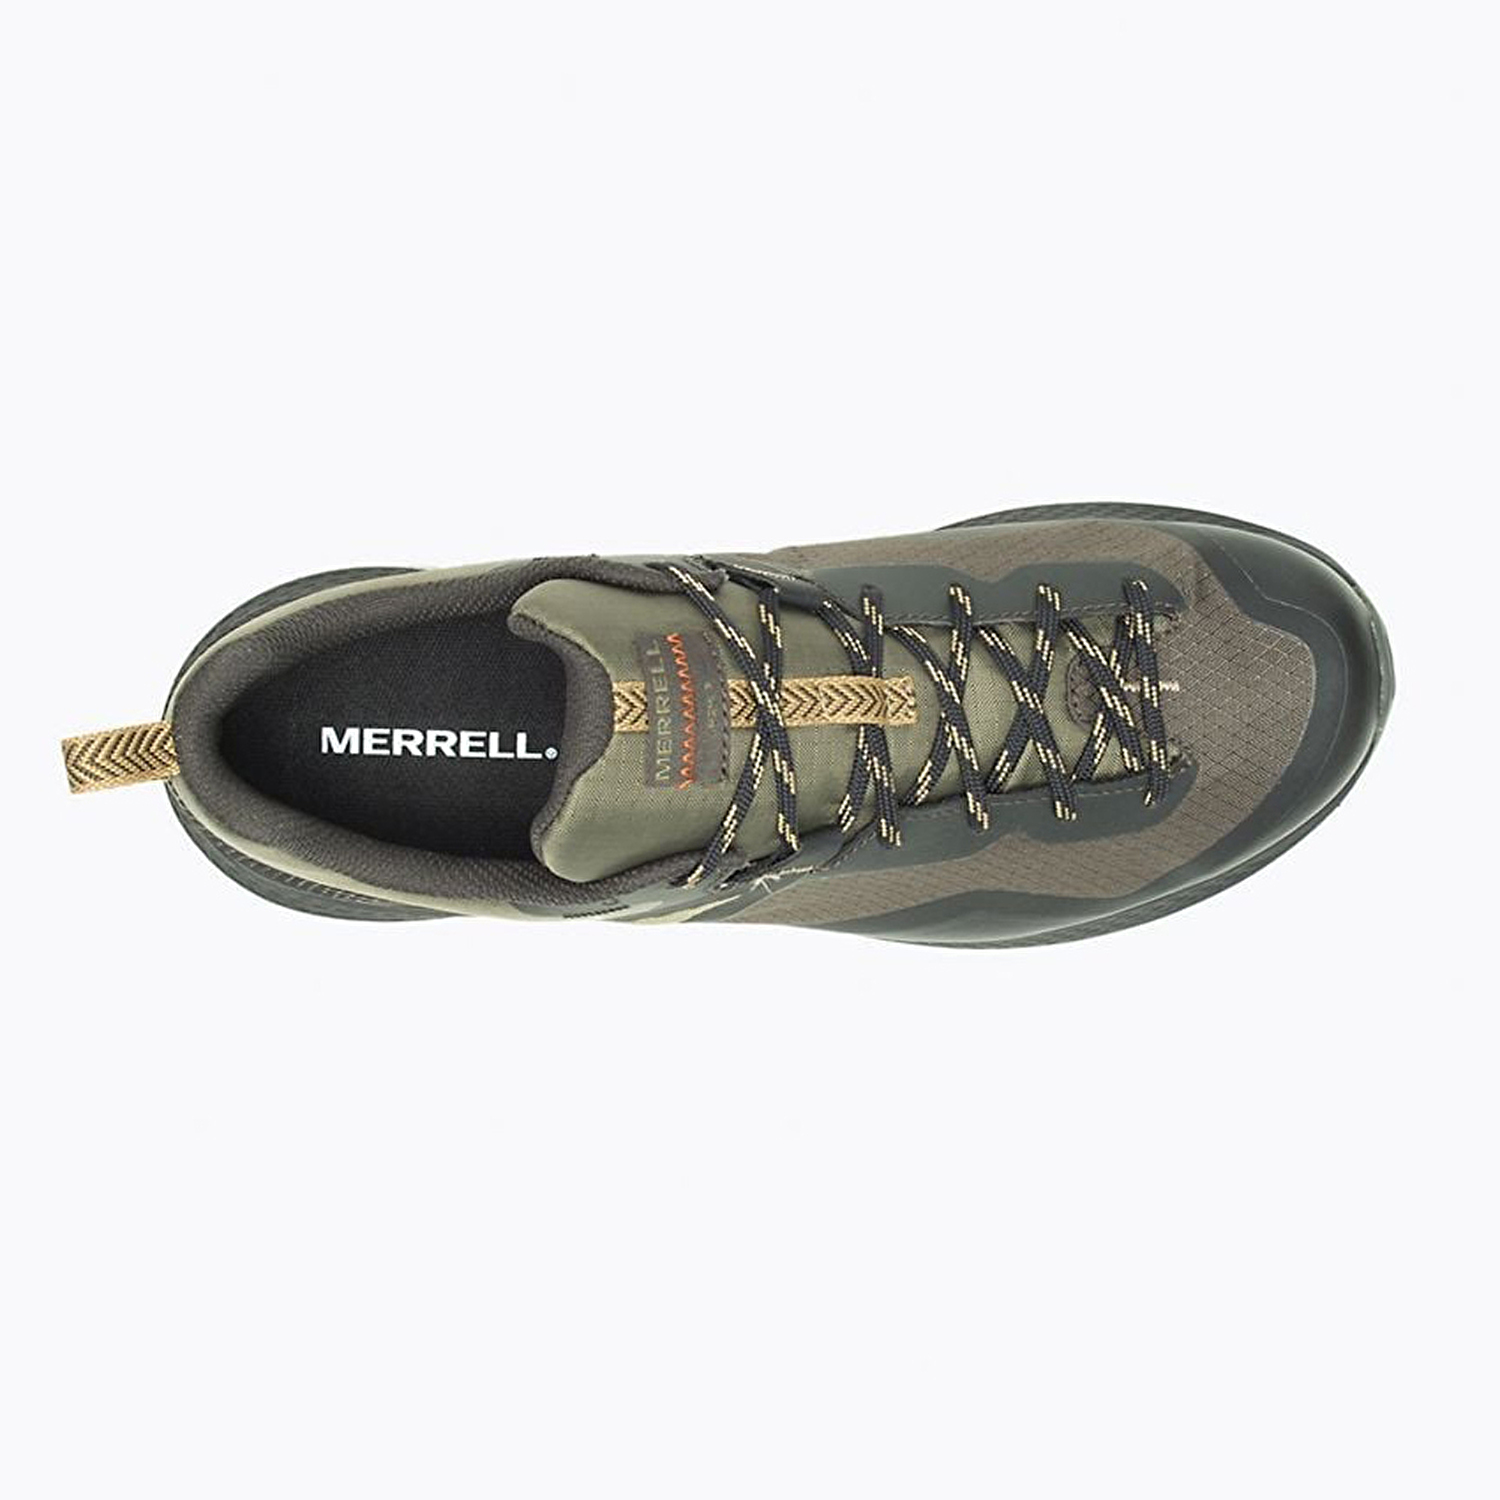 Merrell Mqm 3 Gtx Erkek Outdoor Ayakkabı